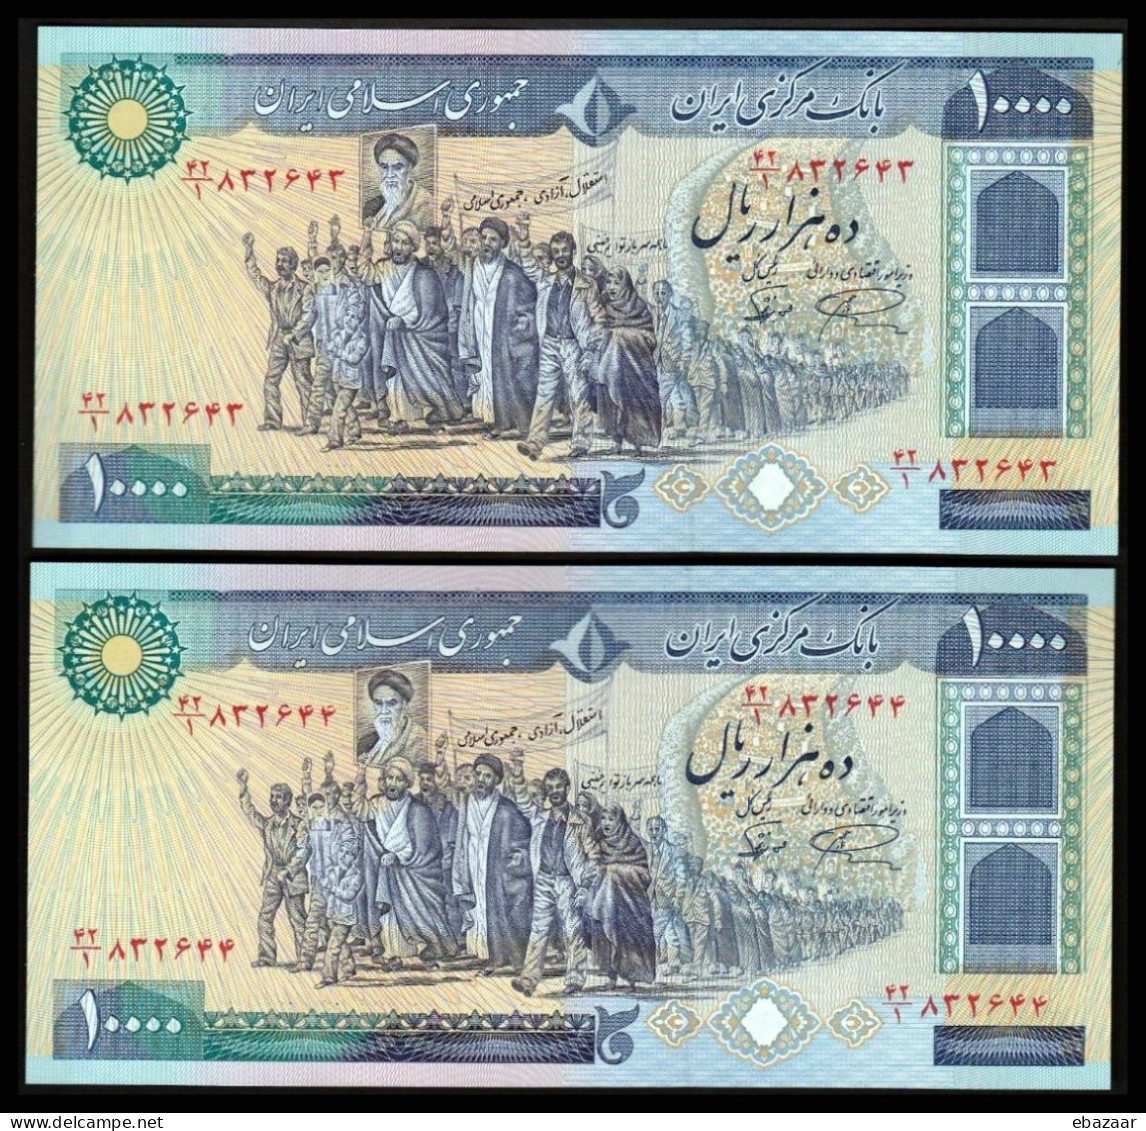 Iran (1981) 10000 Rials 2 Banknotes Consecutive Serial Numbers P-134b UNC - Iran